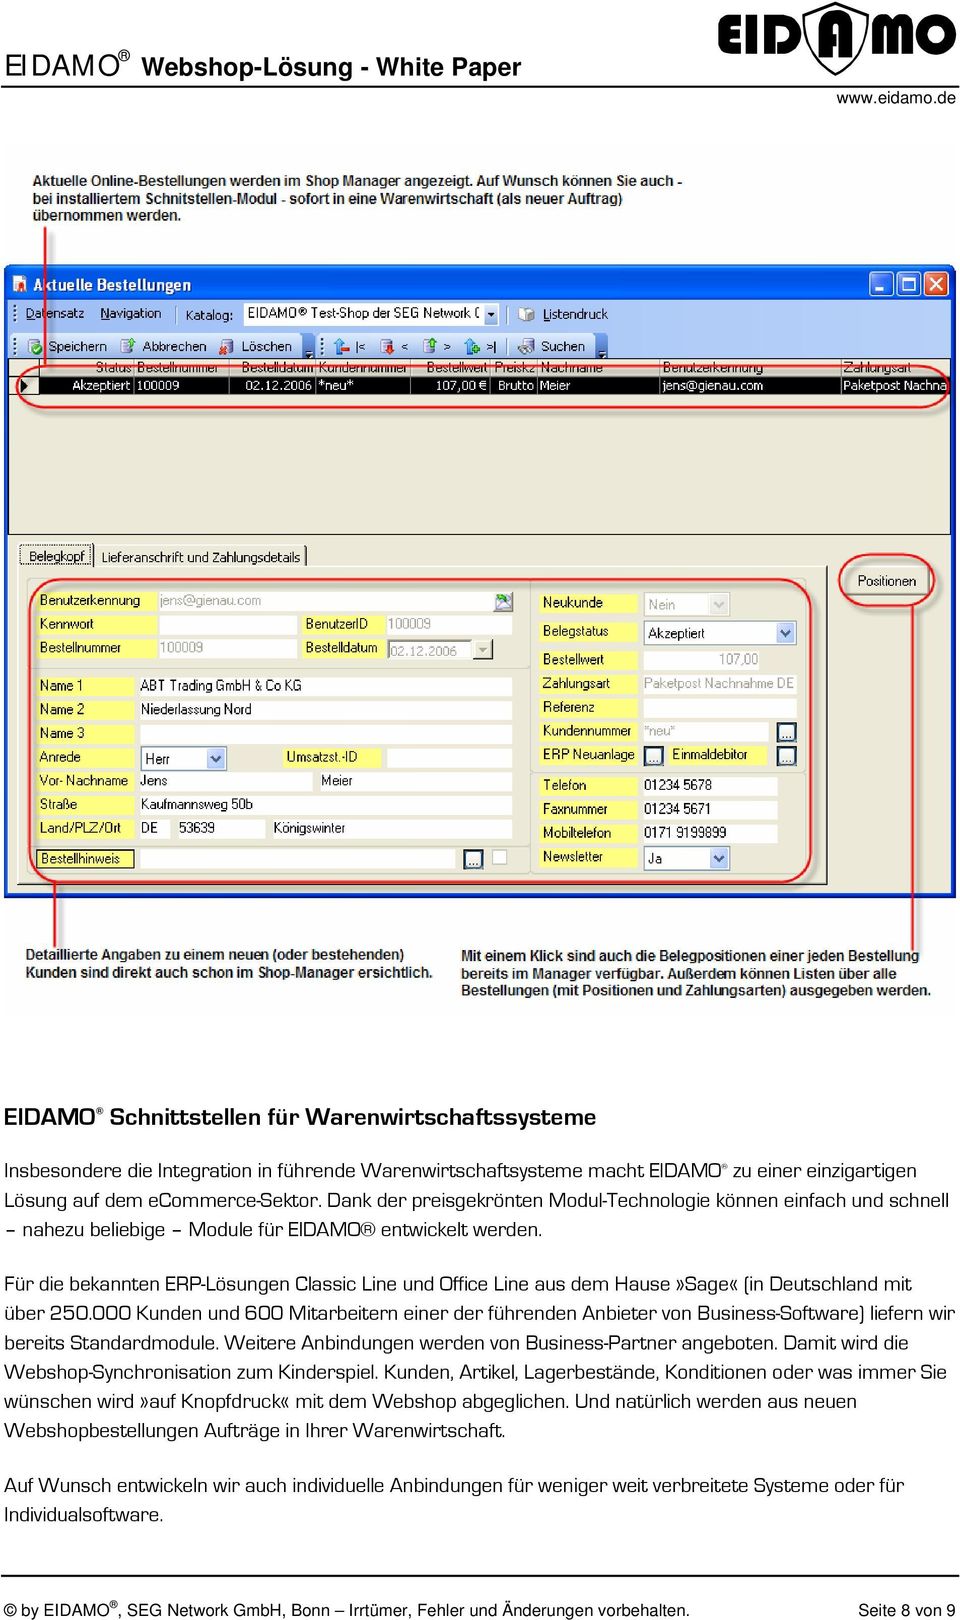 Für die bekannten ERP-Lösungen Classic Line und Office Line aus dem Hause»Sage«(in Deutschland mit über 250.